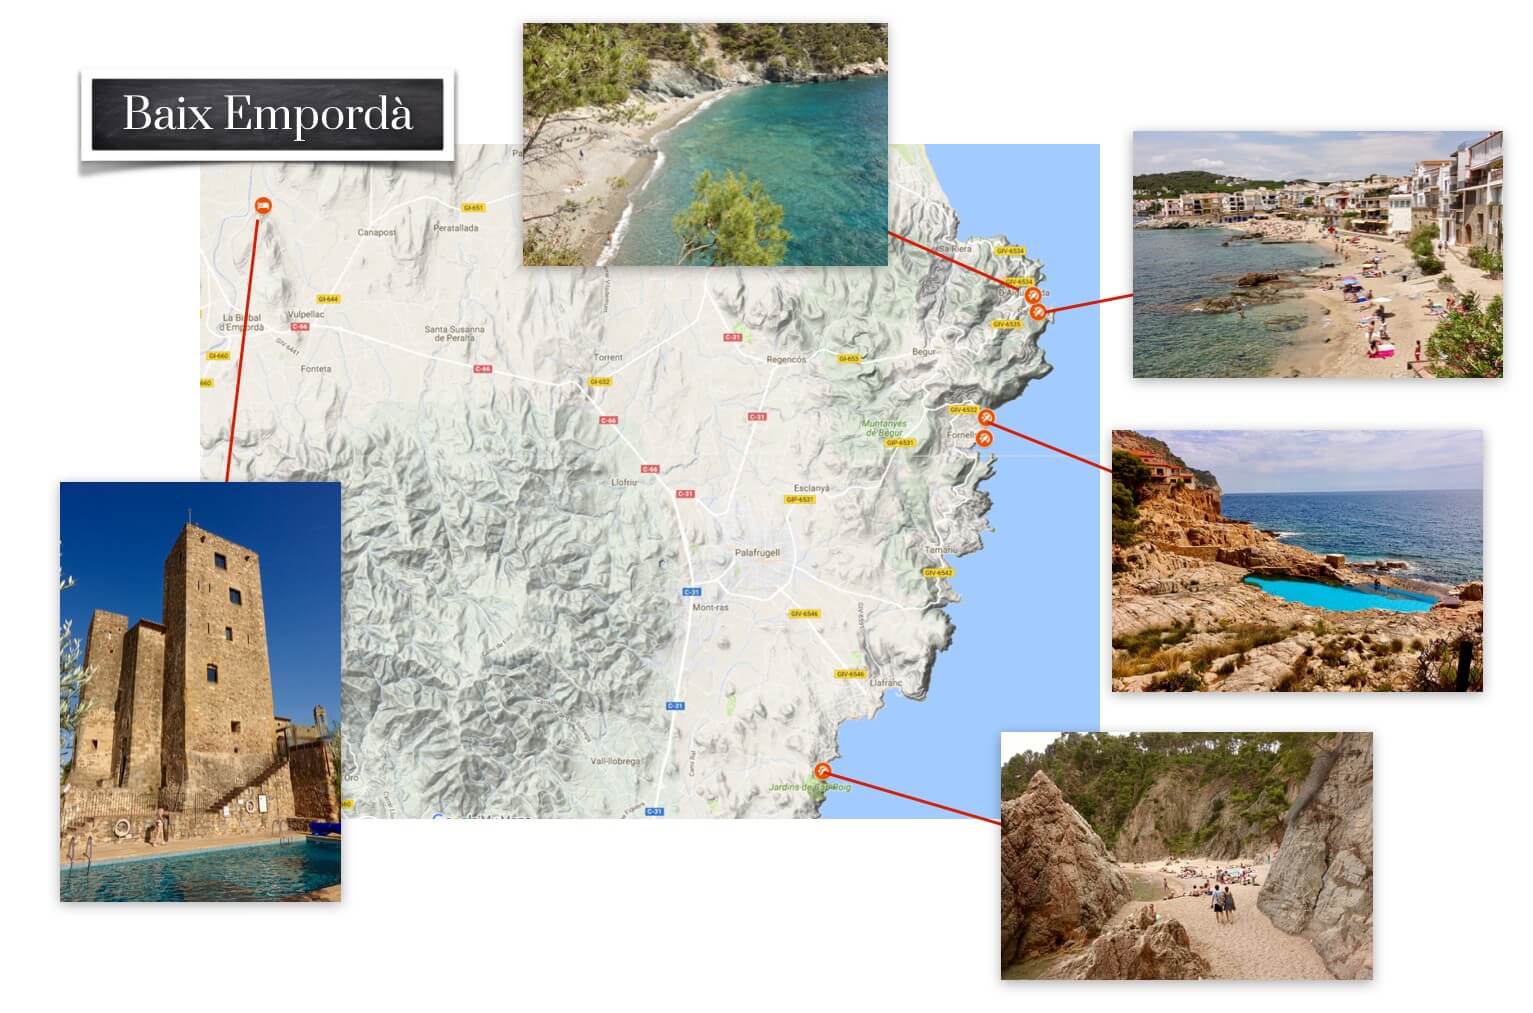 Baix Empordà picture map